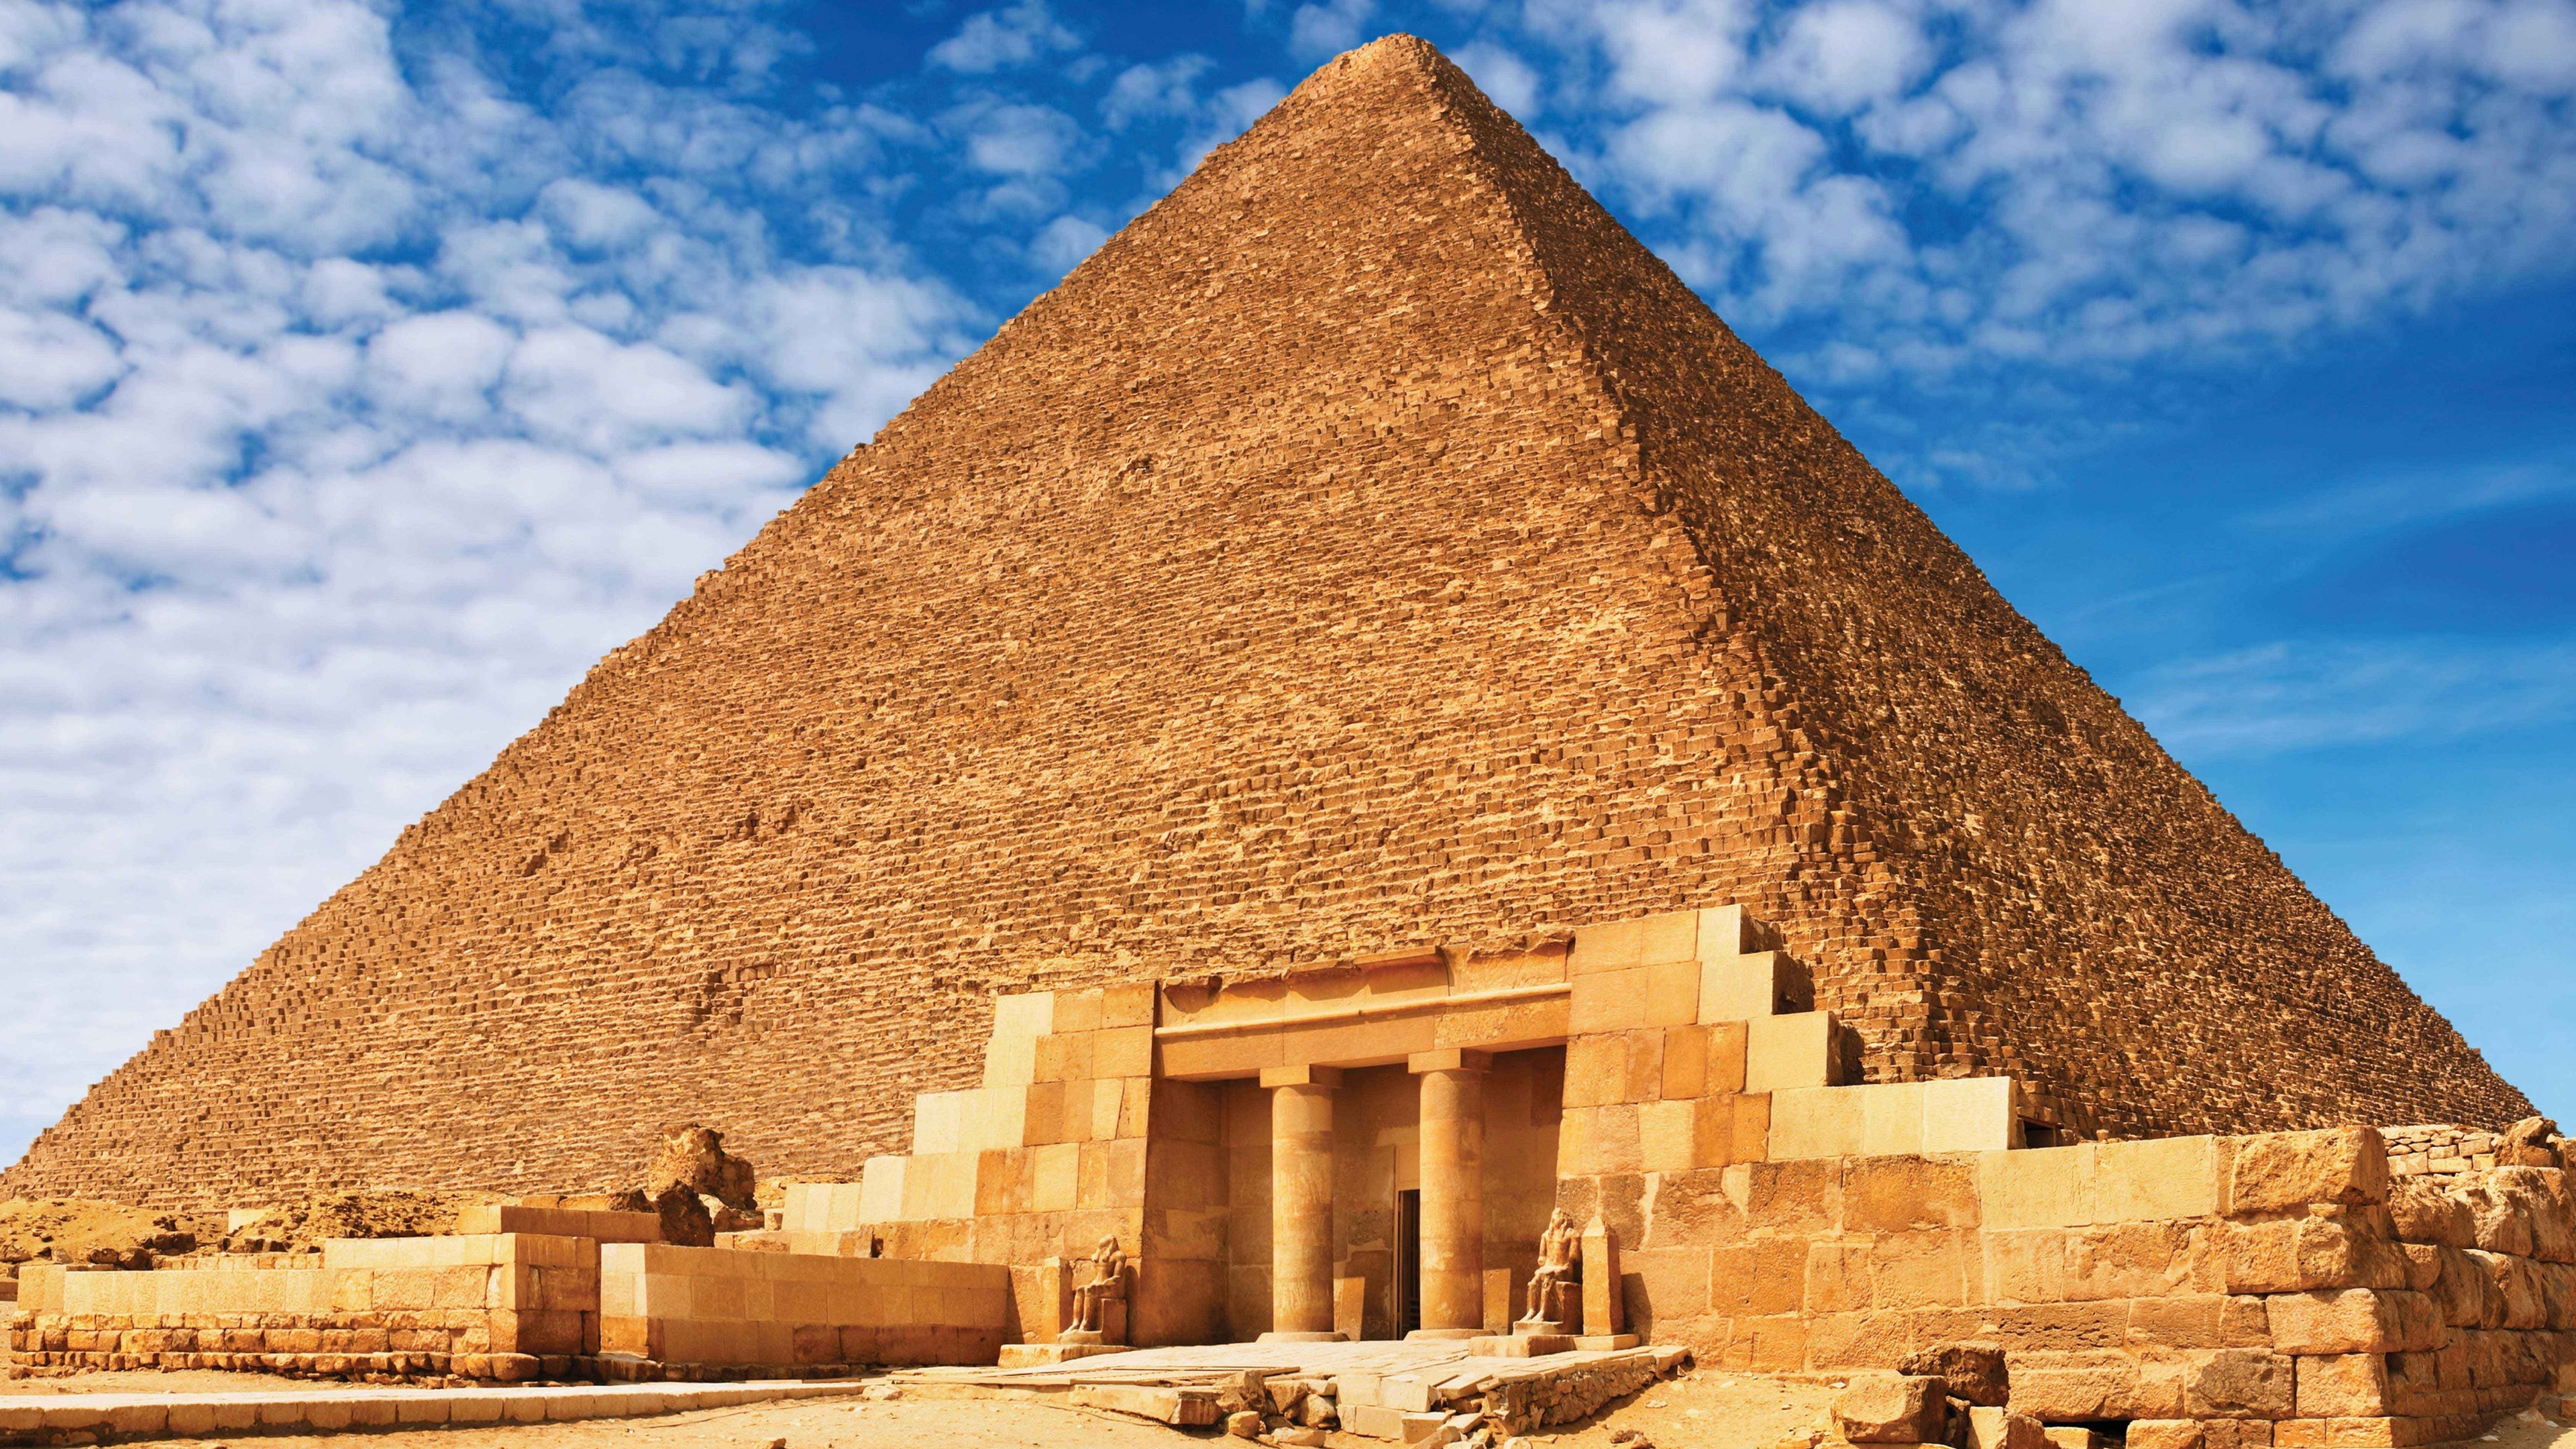 Постройки древности. Пирамида Хеопса (Хуфу). 7 Чудес света пирамида Хеопса. Пирамида Хуфу Египет. Семь чудес света пирамида Хэопс.